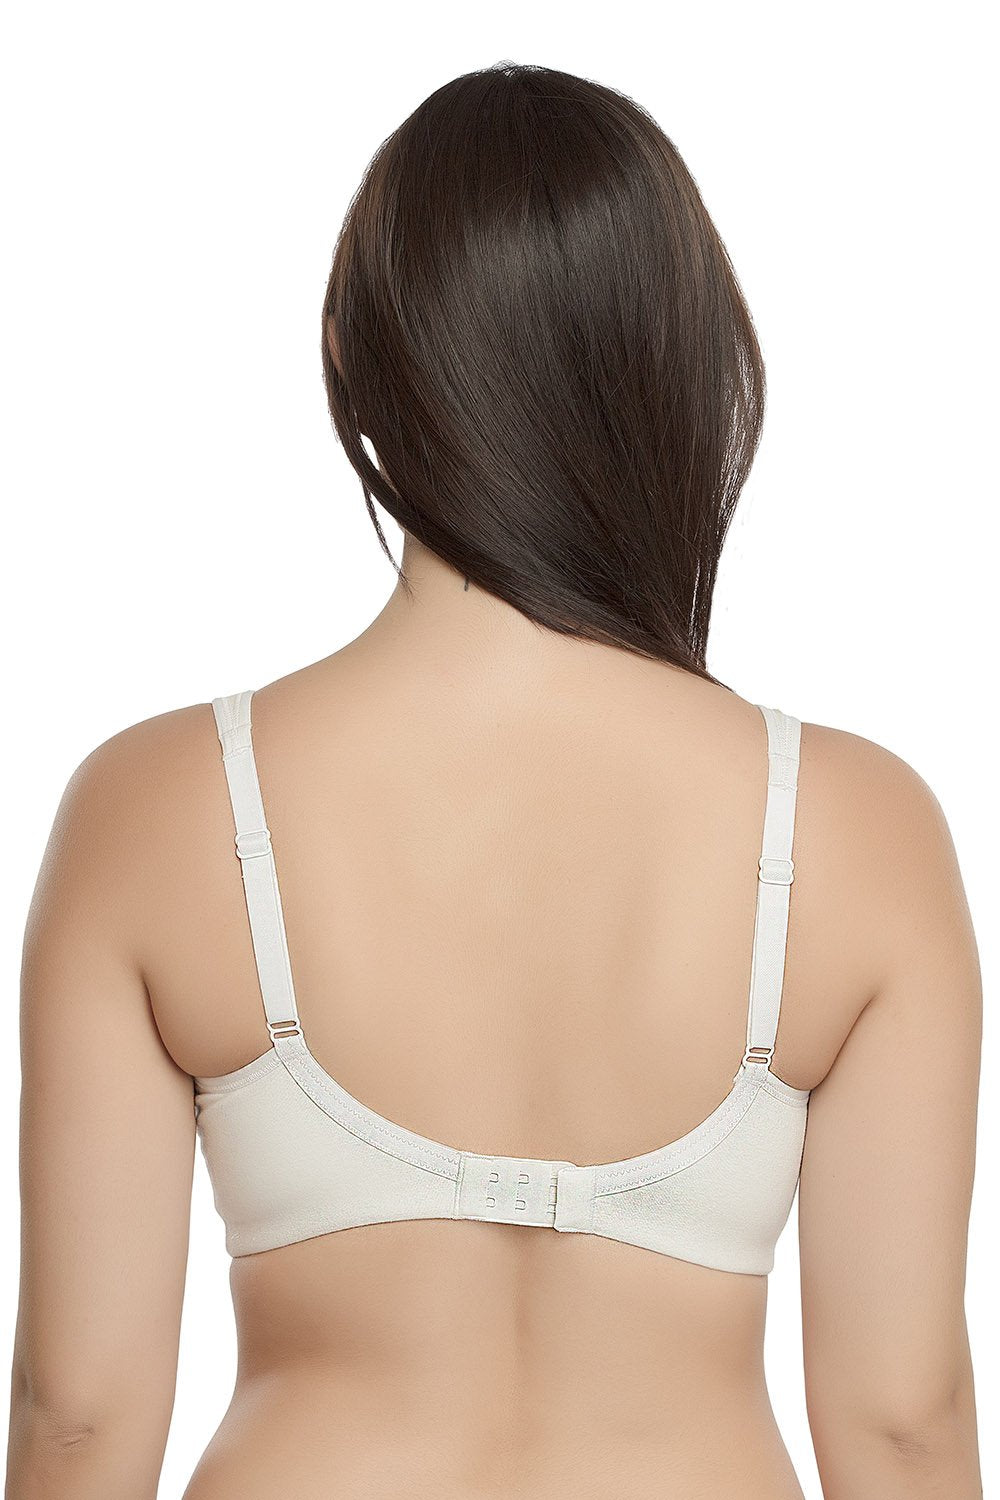 Women's Wireless Bra Women Solid Low Back Bras Underwired U Shape